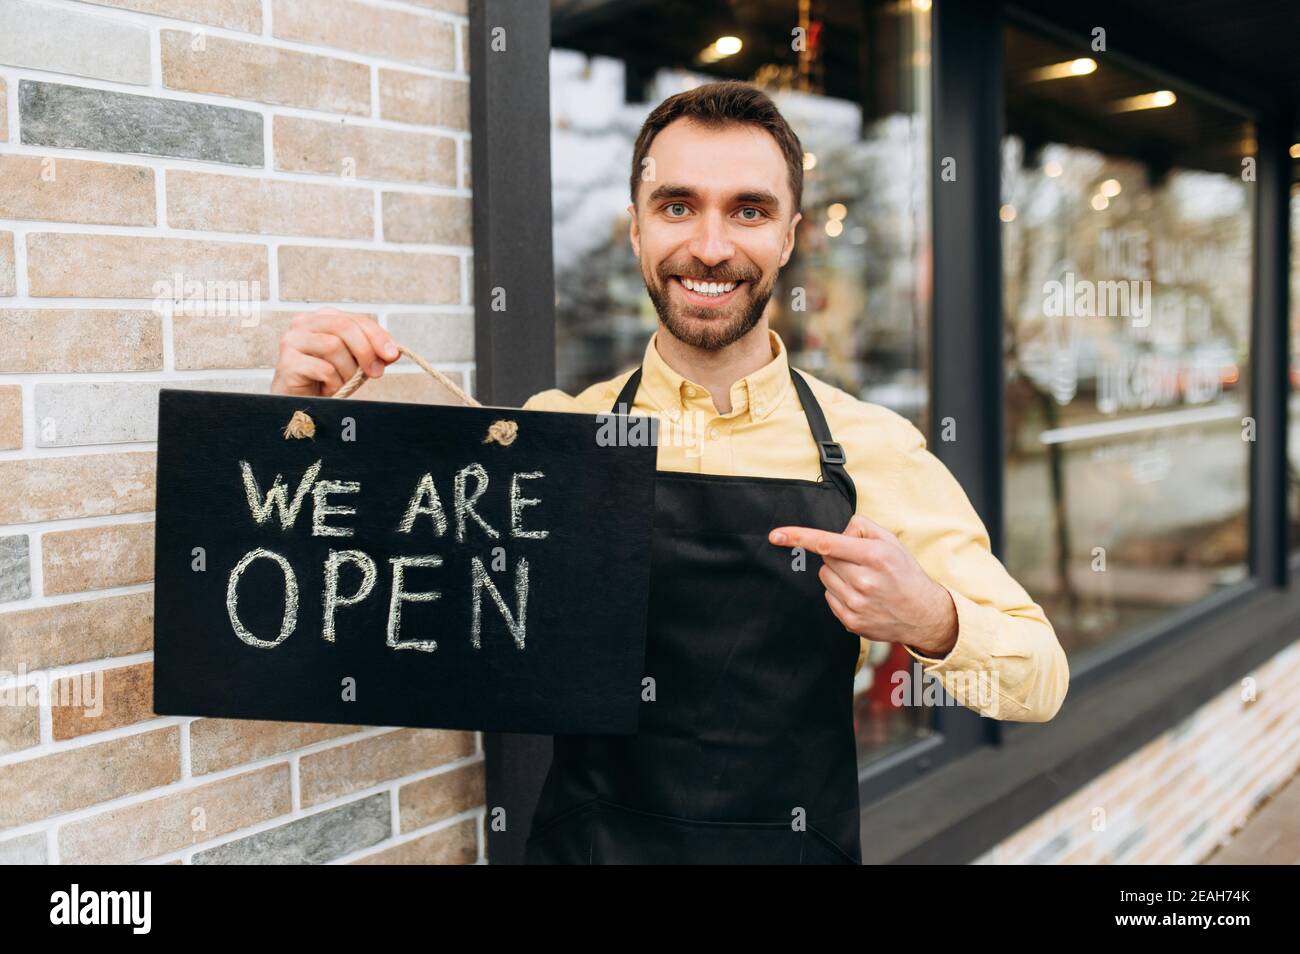 Willkommen, wir sind offen. Porträt des kaukasischen attraktiven männlichen Kellner im Freien in der Nähe eines Restaurants oder Cafés, zeigt einen Finger auf ein Schild OFFEN und freundliches Lächeln. Unterstützung des Konzepts für kleine Unternehmen Stockfoto